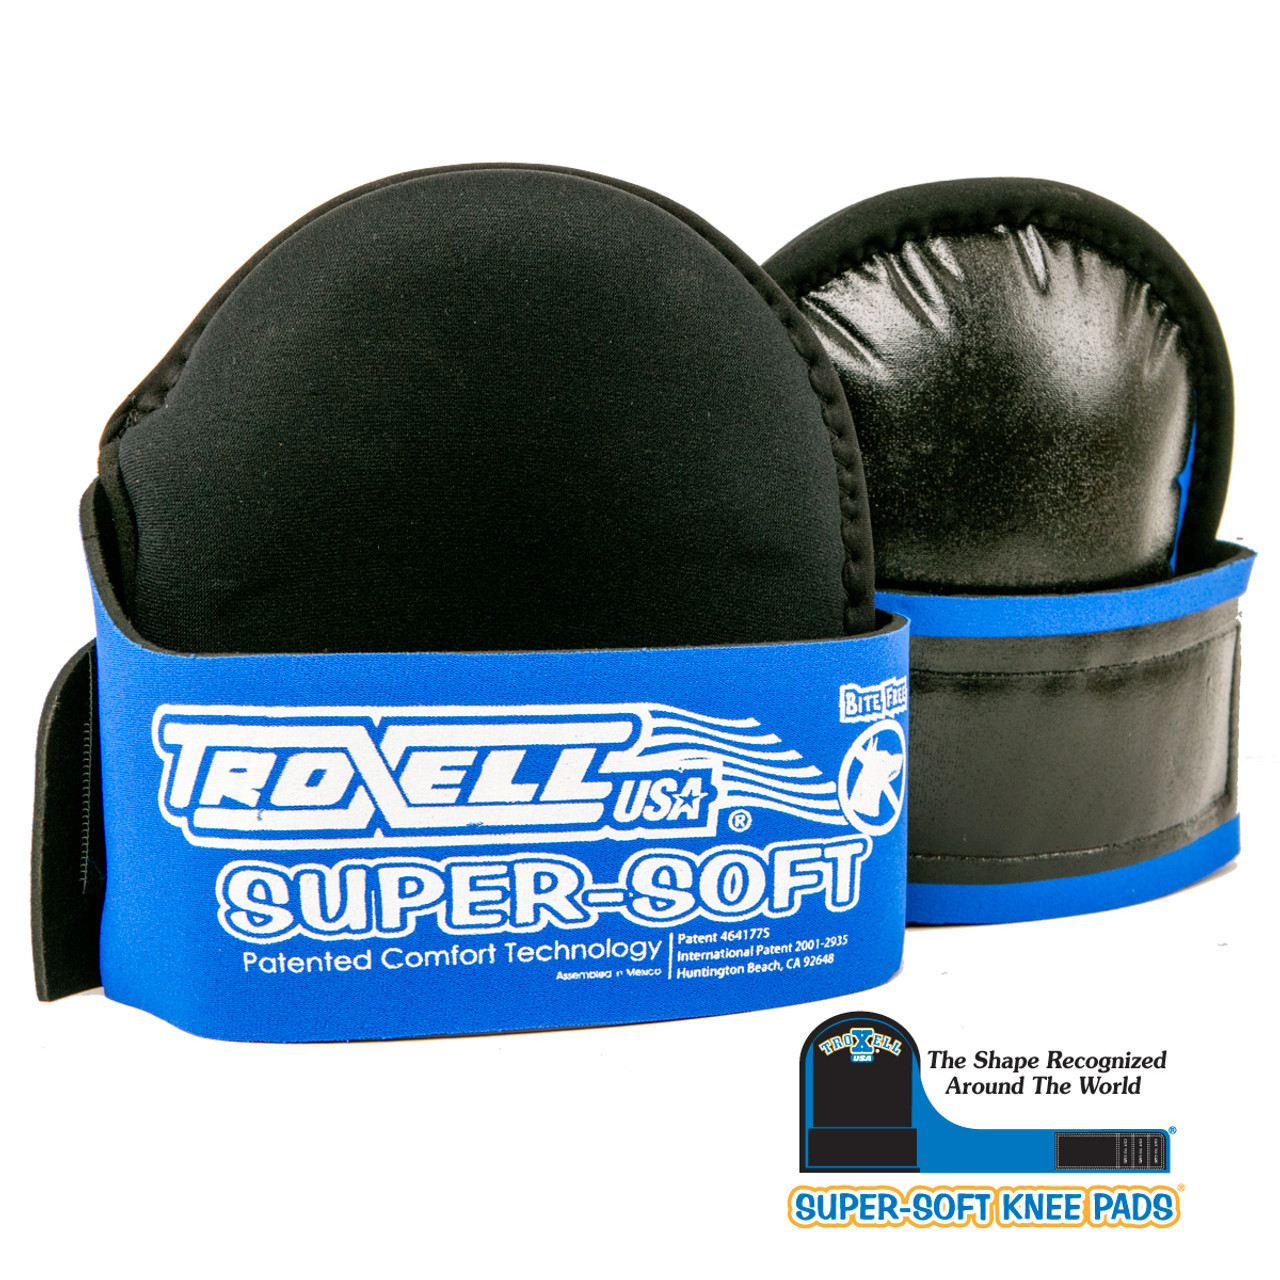 Troxell Original Super-Soft Knee Pads 17-209SOFT Size: REG/MED